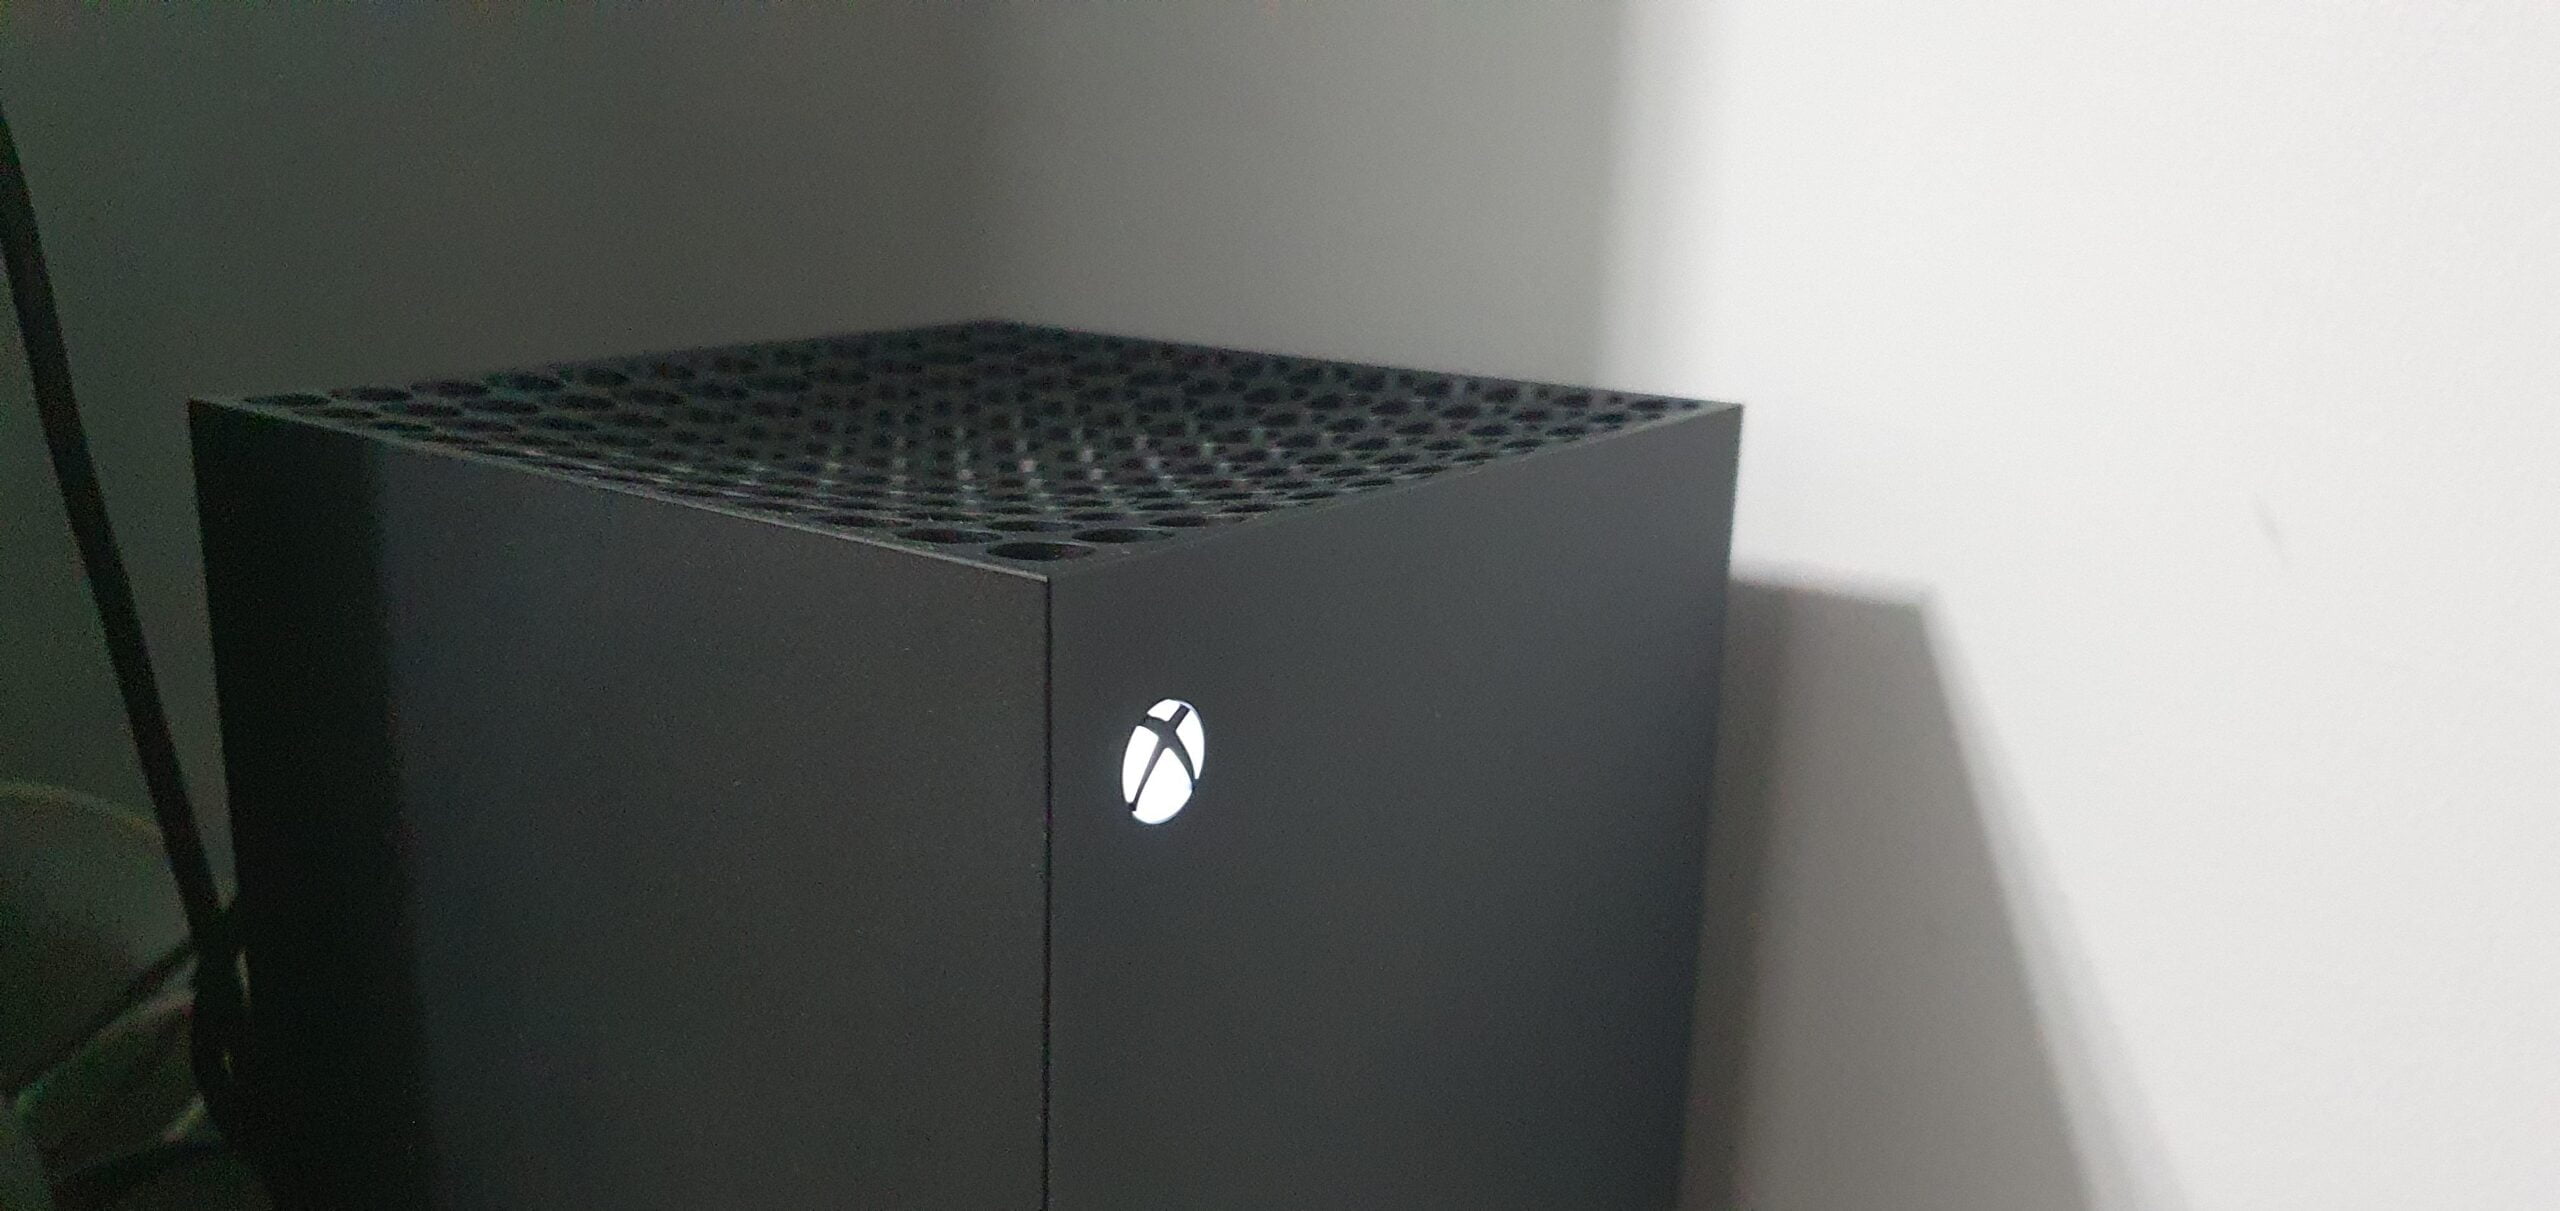 Xbox Series X/S bije rekordy sprzedaży Microsoftu